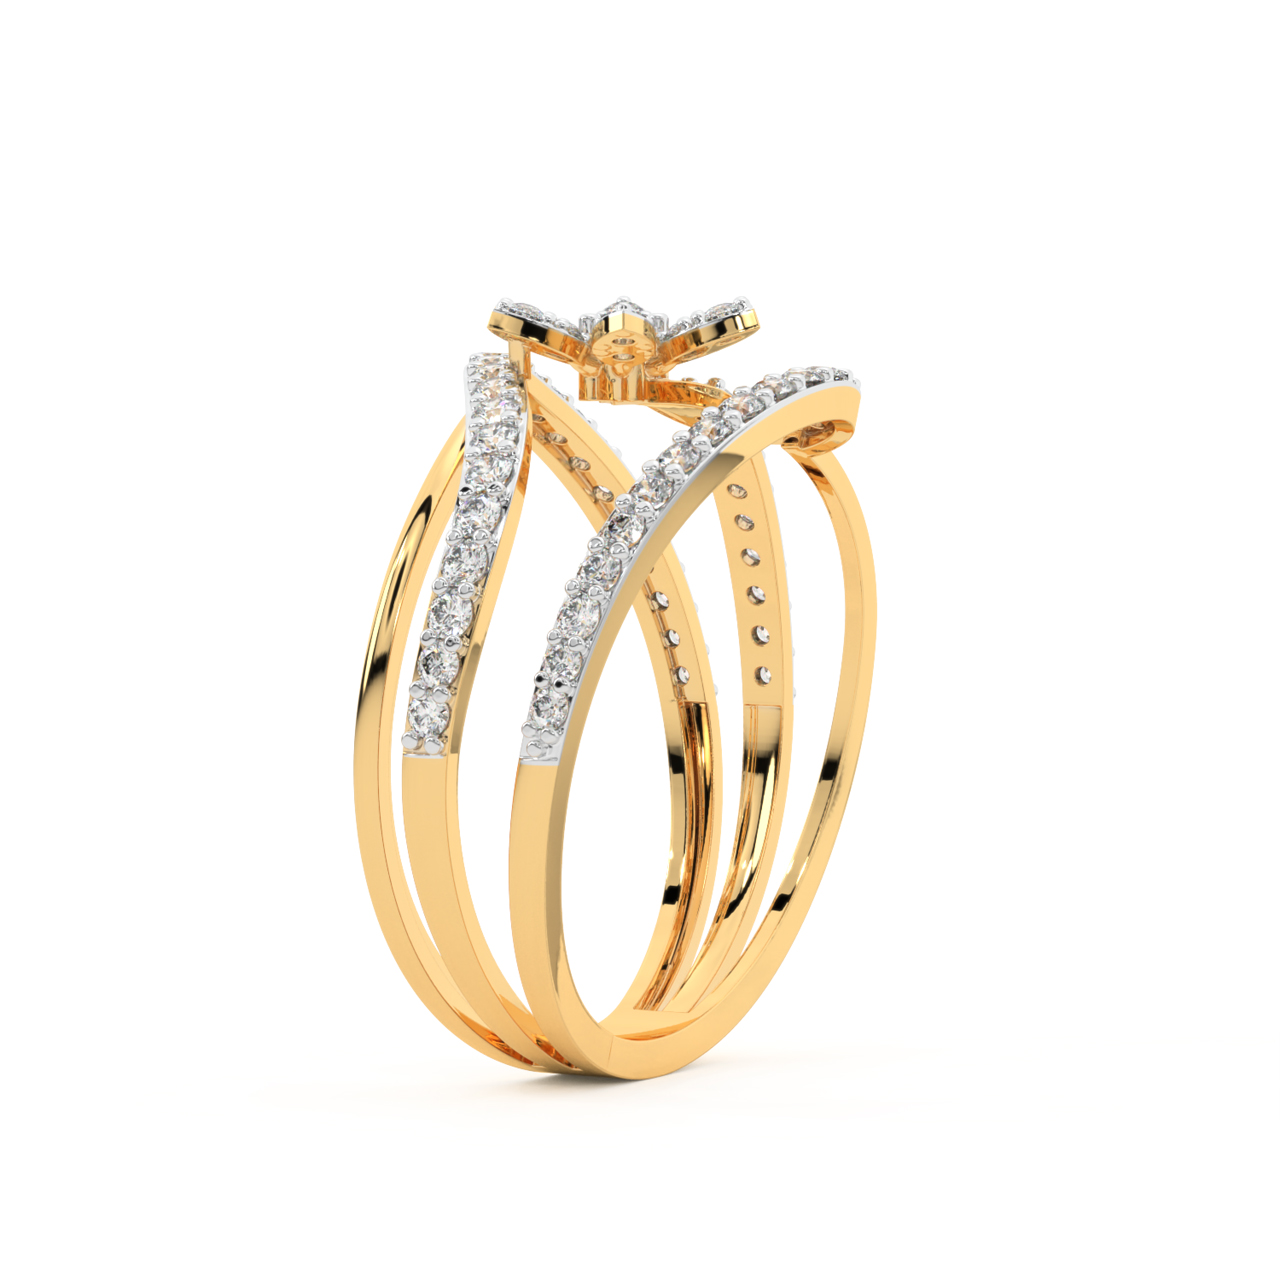 Shimmer Flower Engagement Ring